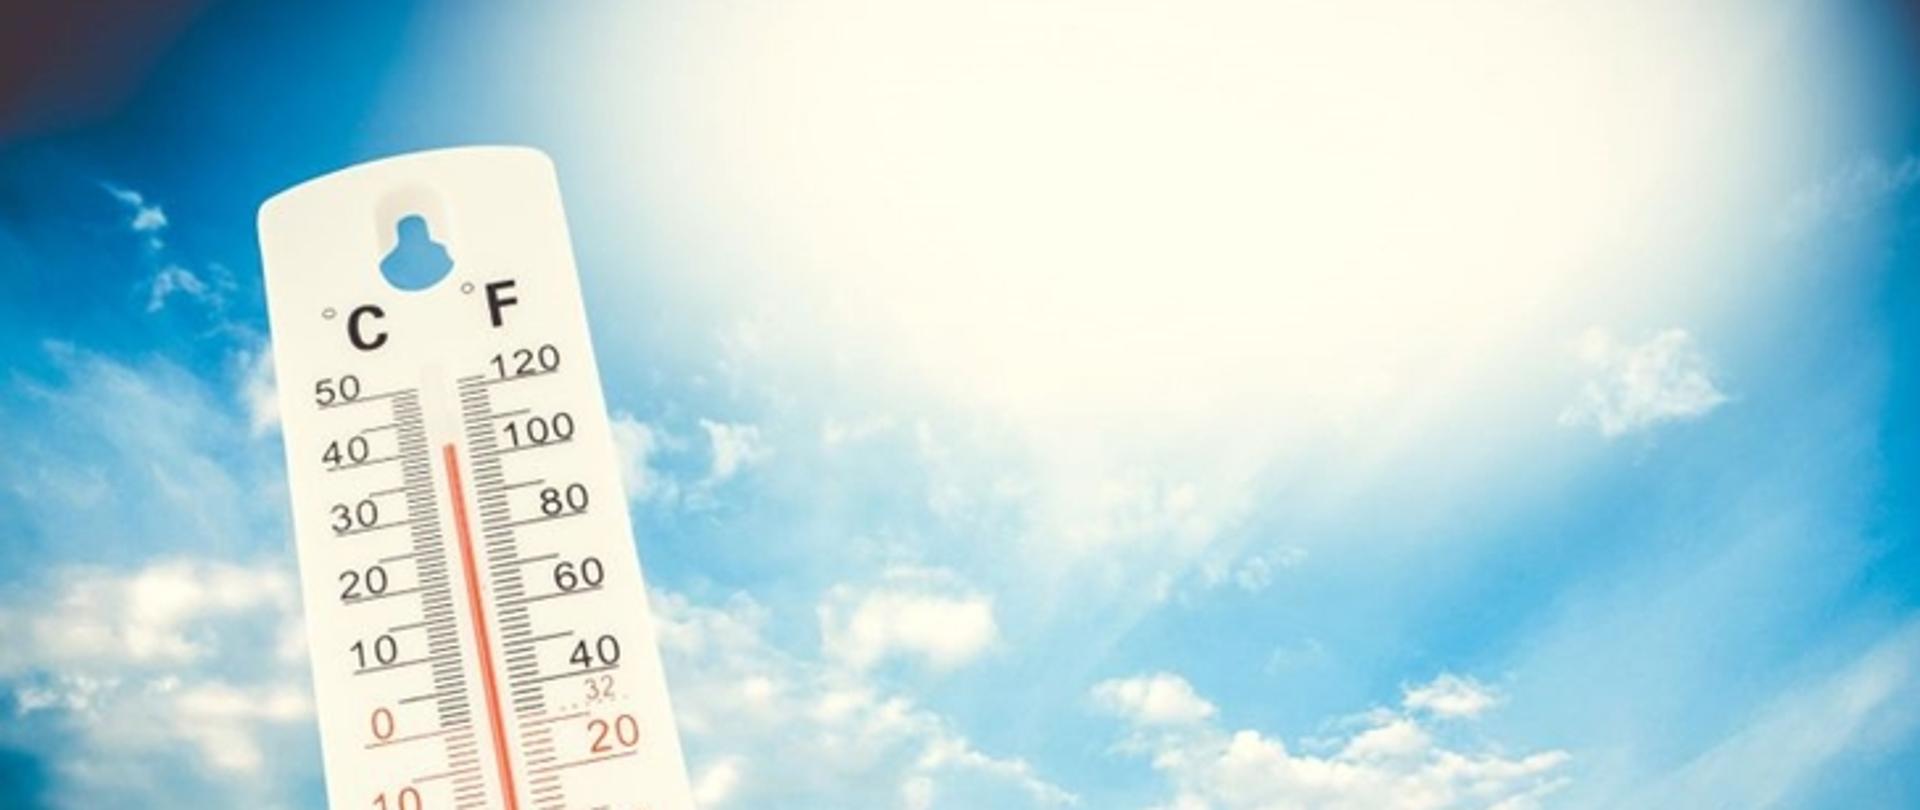 Obraz przedstawiający termometr który wskazuje wysoką temperaturę na tle słonecznego nieba.